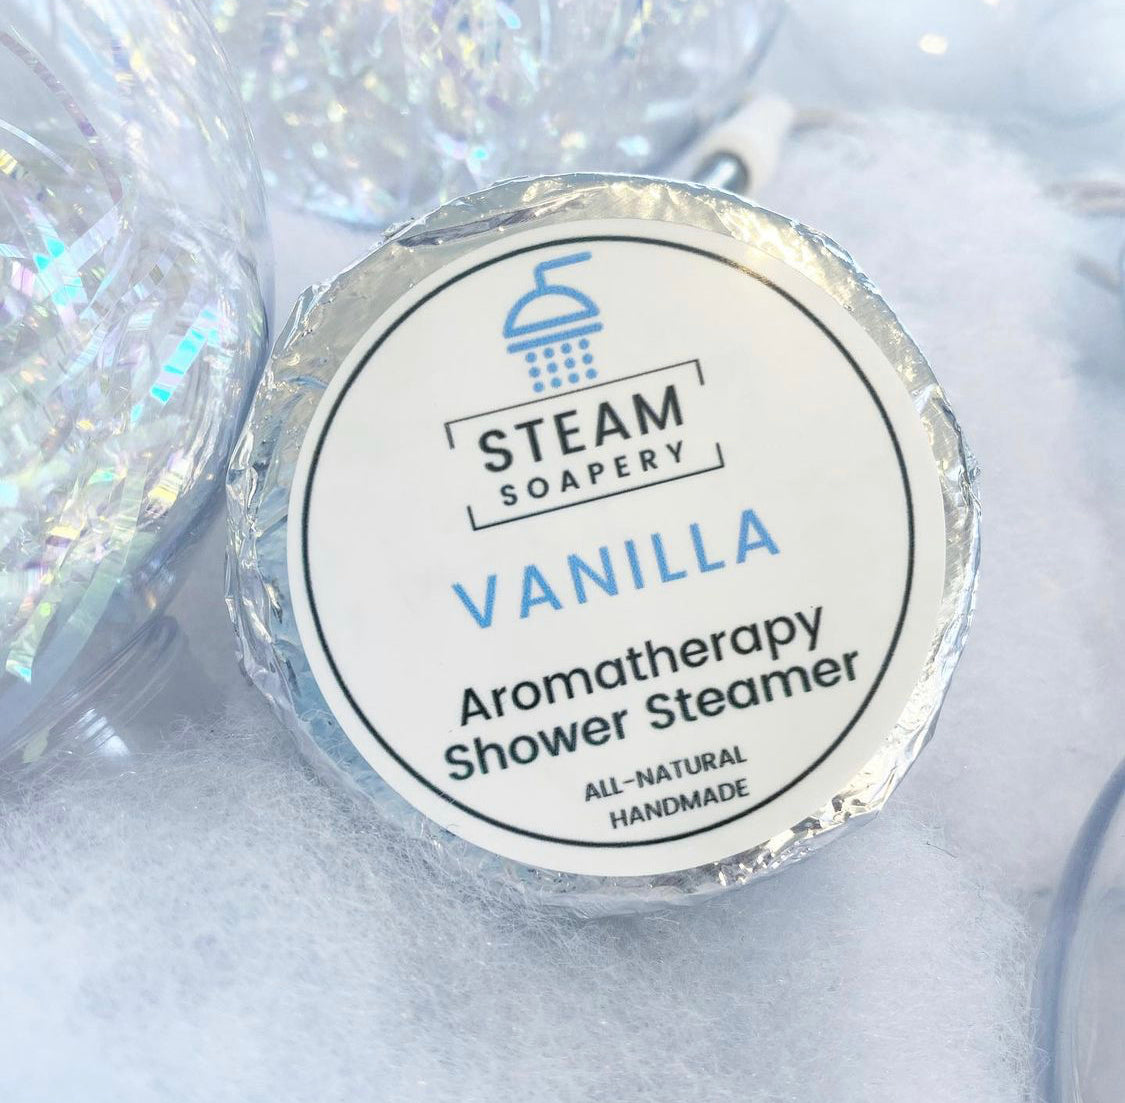 Vanilla Shower Steamer